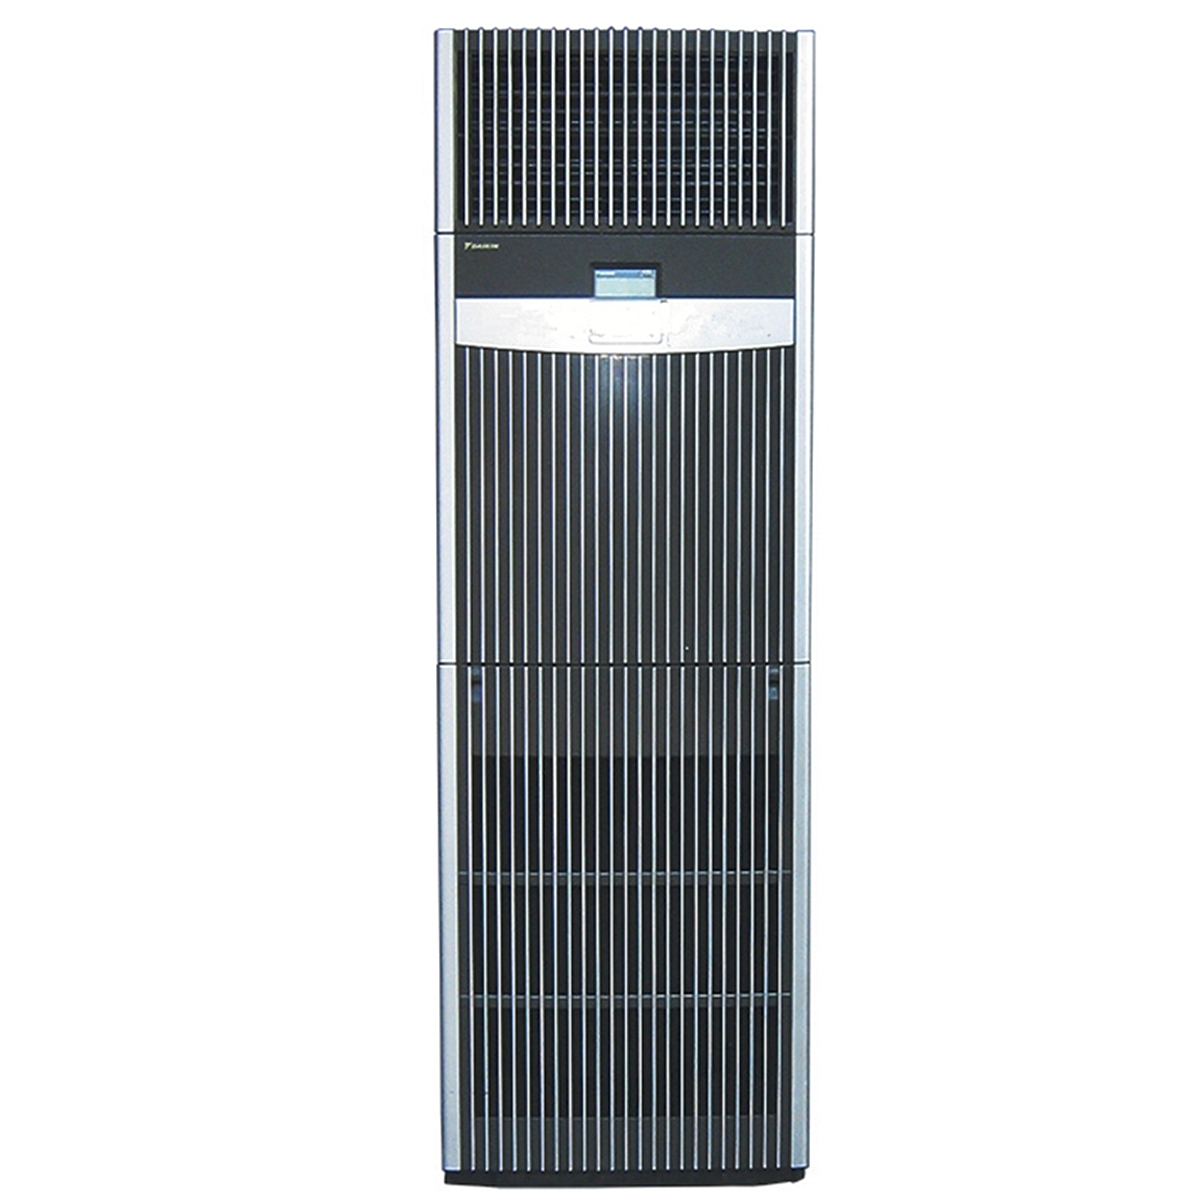 大金（DAIKIN）FNVQ203AAKD 3P 定频 冷暖 二级能效 柜式空调 (套) 黑色